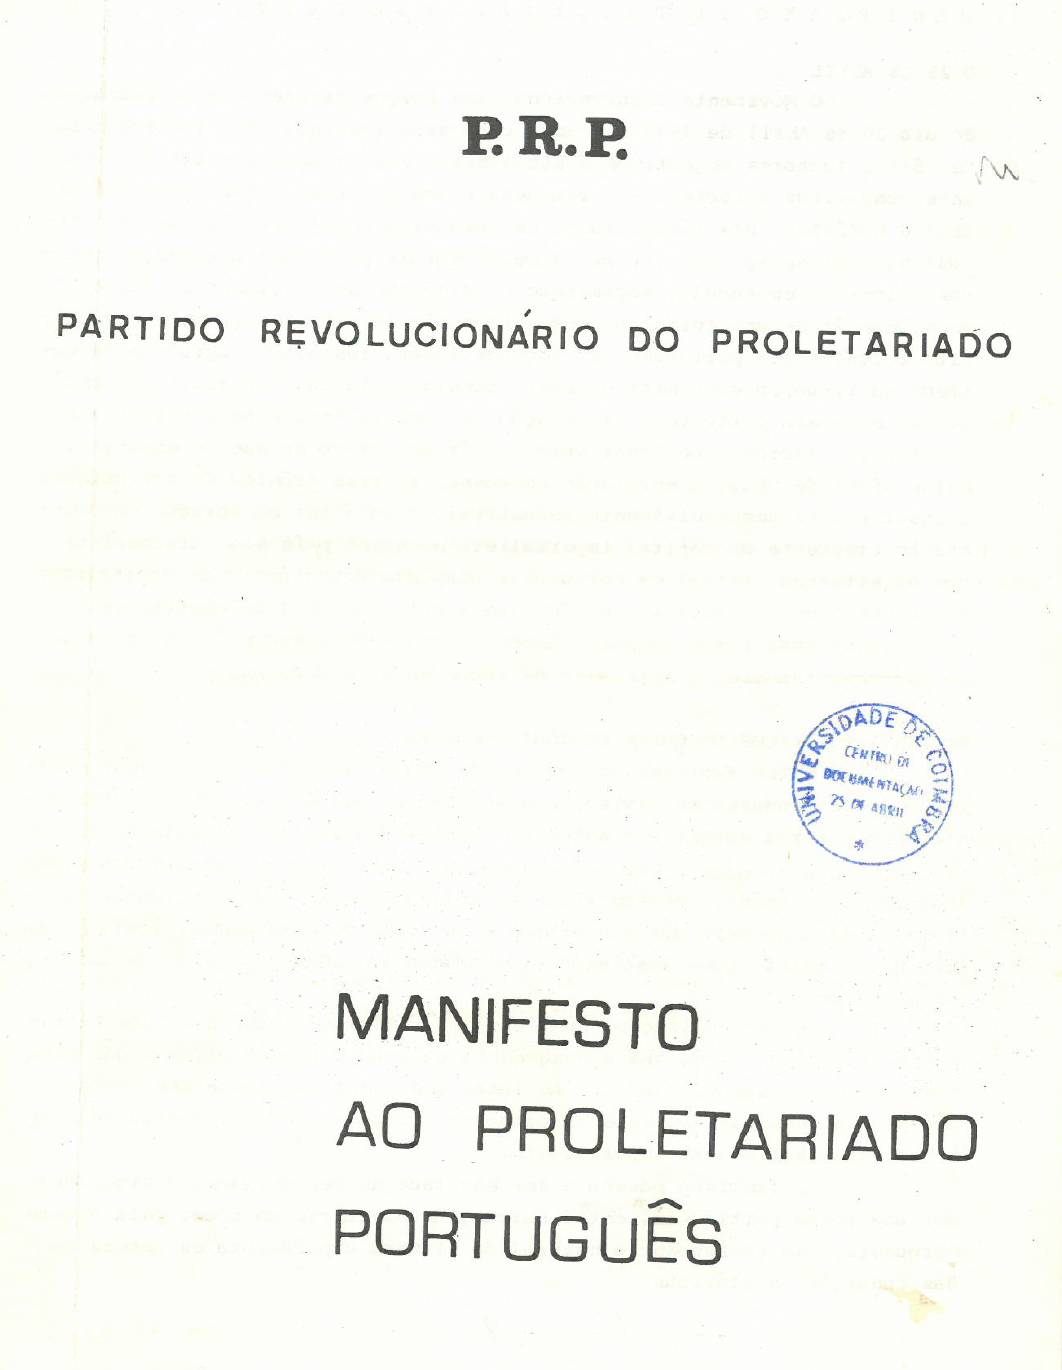 Partido Revolucionário do Proletariado-Brigadas Revolucionárias (PRP-BR), "Manifesto ao proletariado português" (1974)